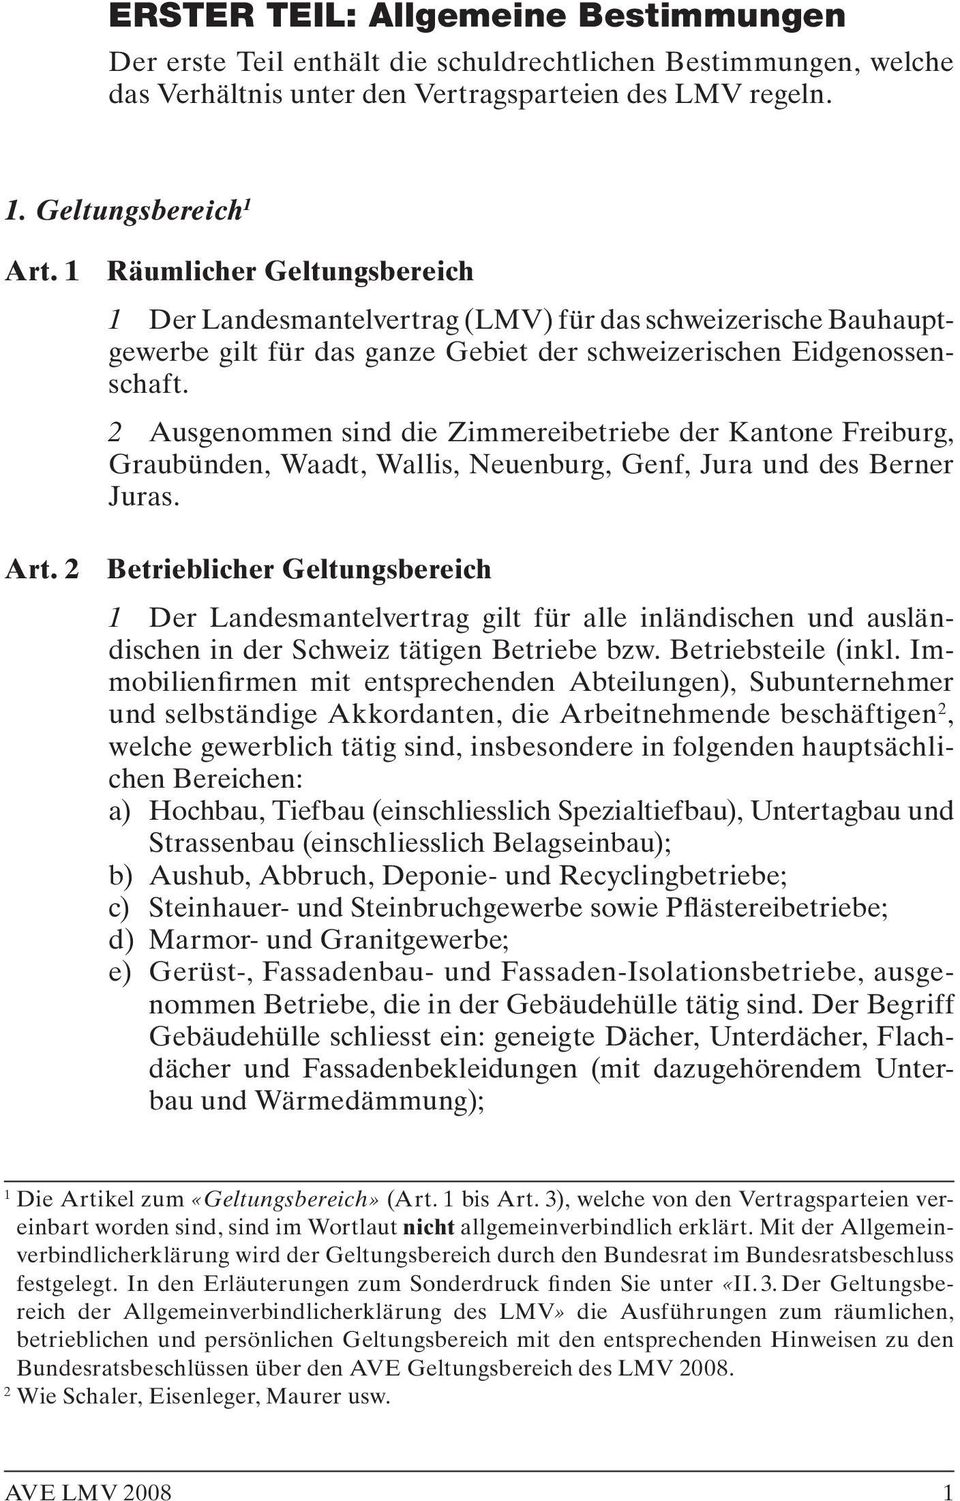 2 Ausgenommen sind die Zimmereibetriebe der Kantone Freiburg, Graubünden, Waadt, Wallis, Neuenburg, Genf, Jura und des Berner Juras. Art.